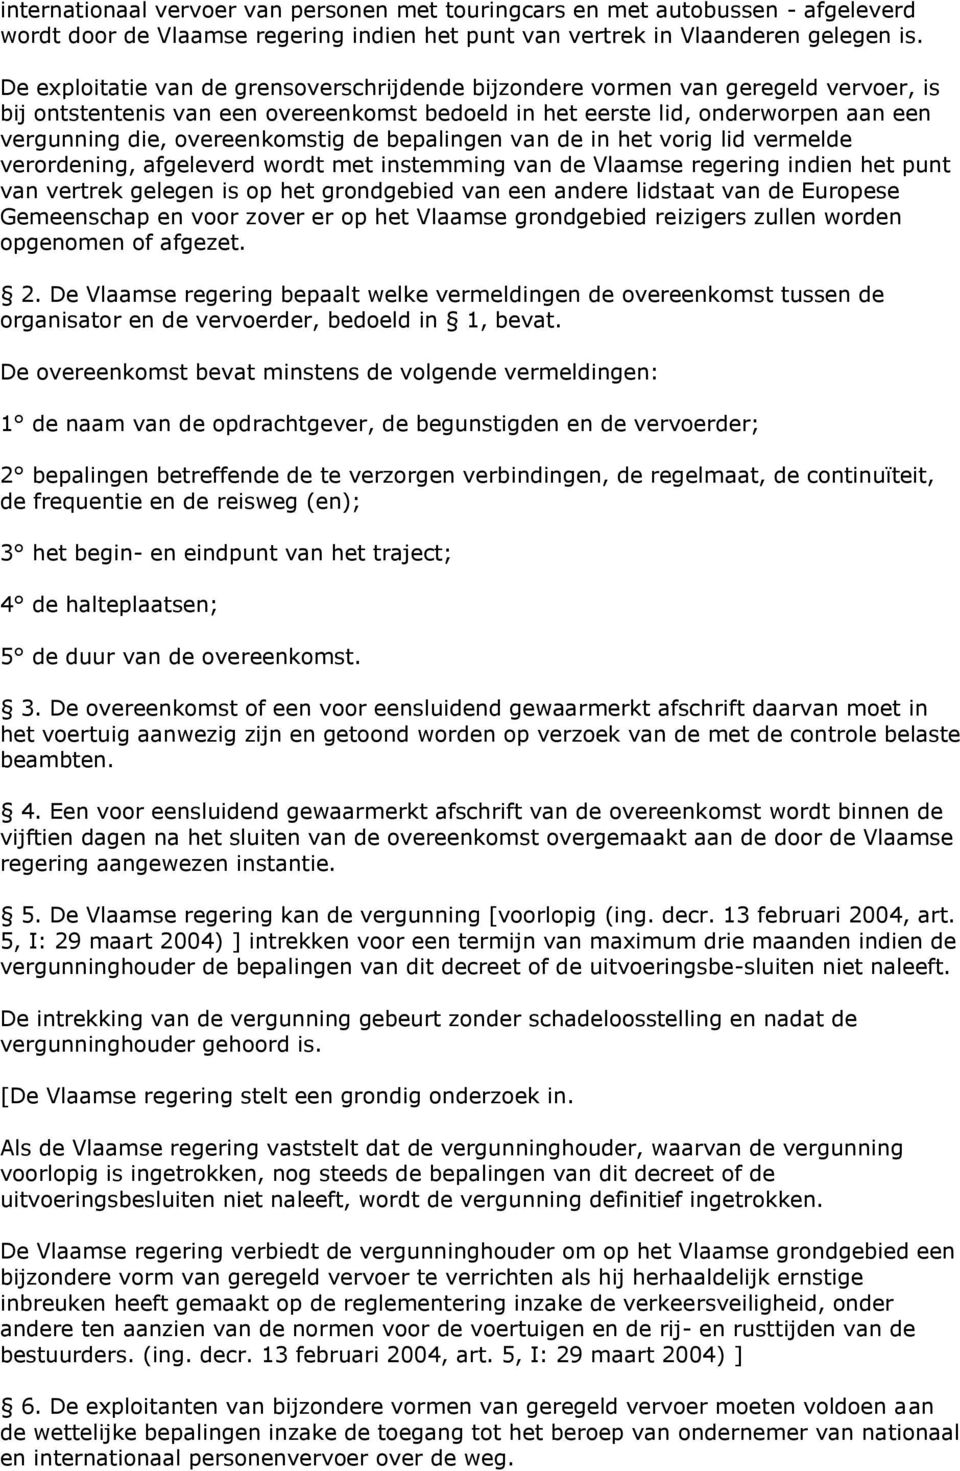 overeenkomstig de bepalingen van de in het vorig lid vermelde verordening, afgeleverd wordt met instemming van de Vlaamse regering indien het punt van vertrek gelegen is op het grondgebied van een